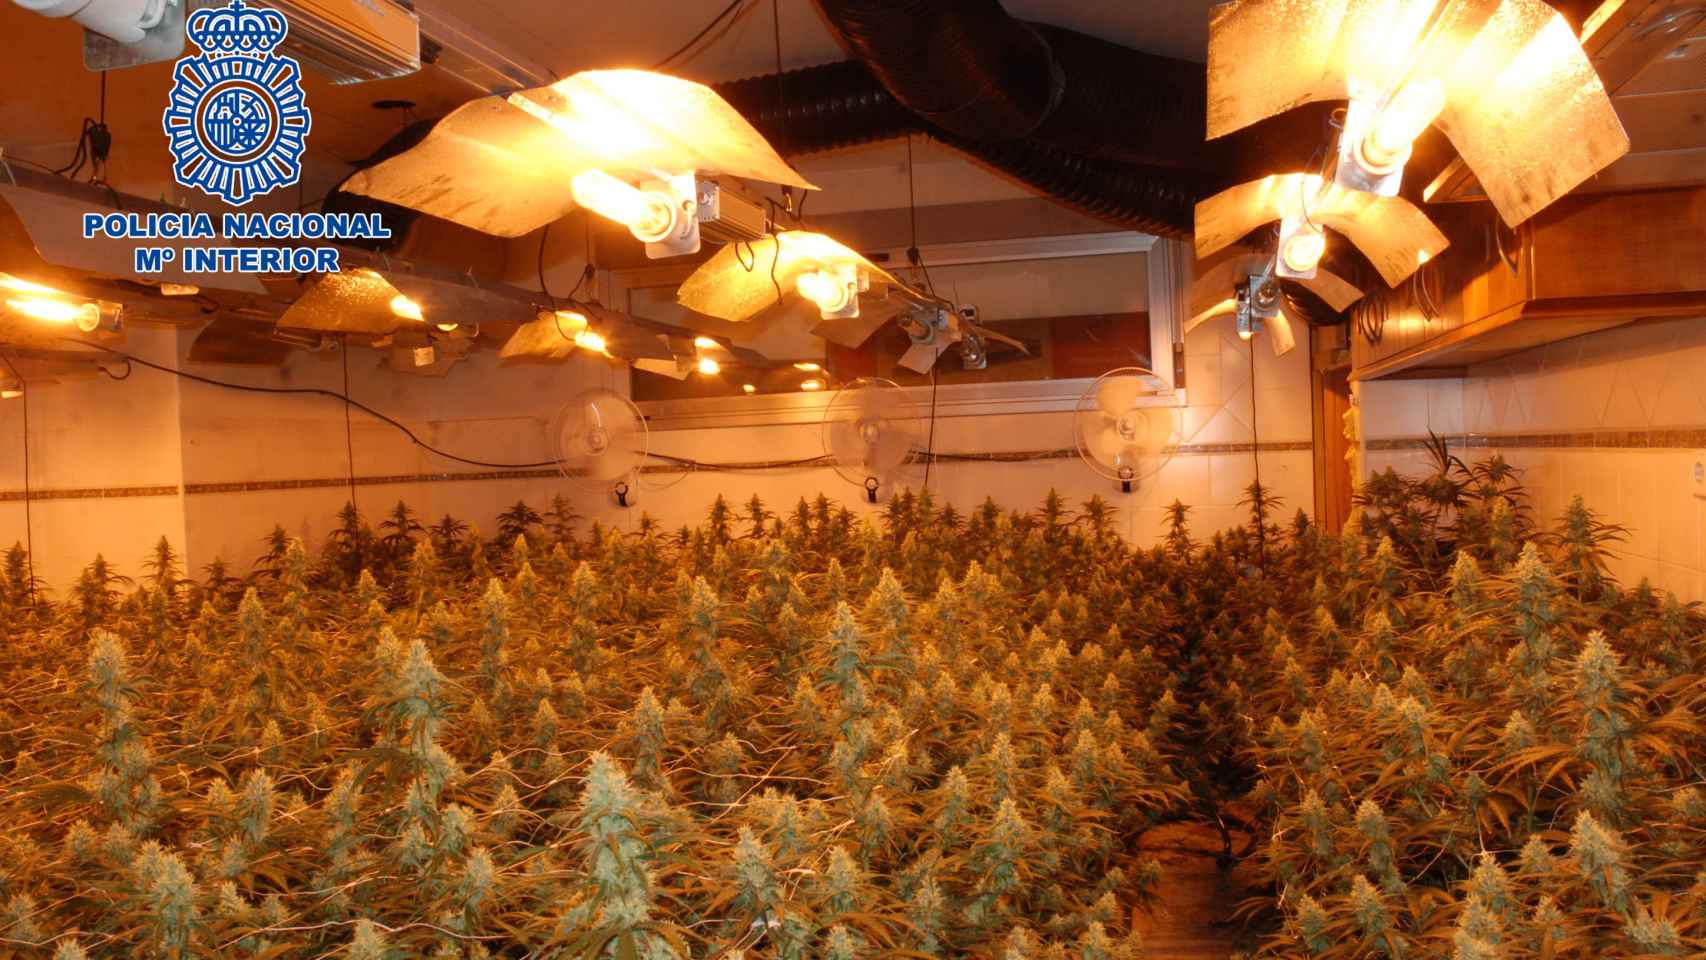 Un detenido y desmantelado un cultivo de marihuana en Cuenca compuesto por más de 600 plantas de cannabis